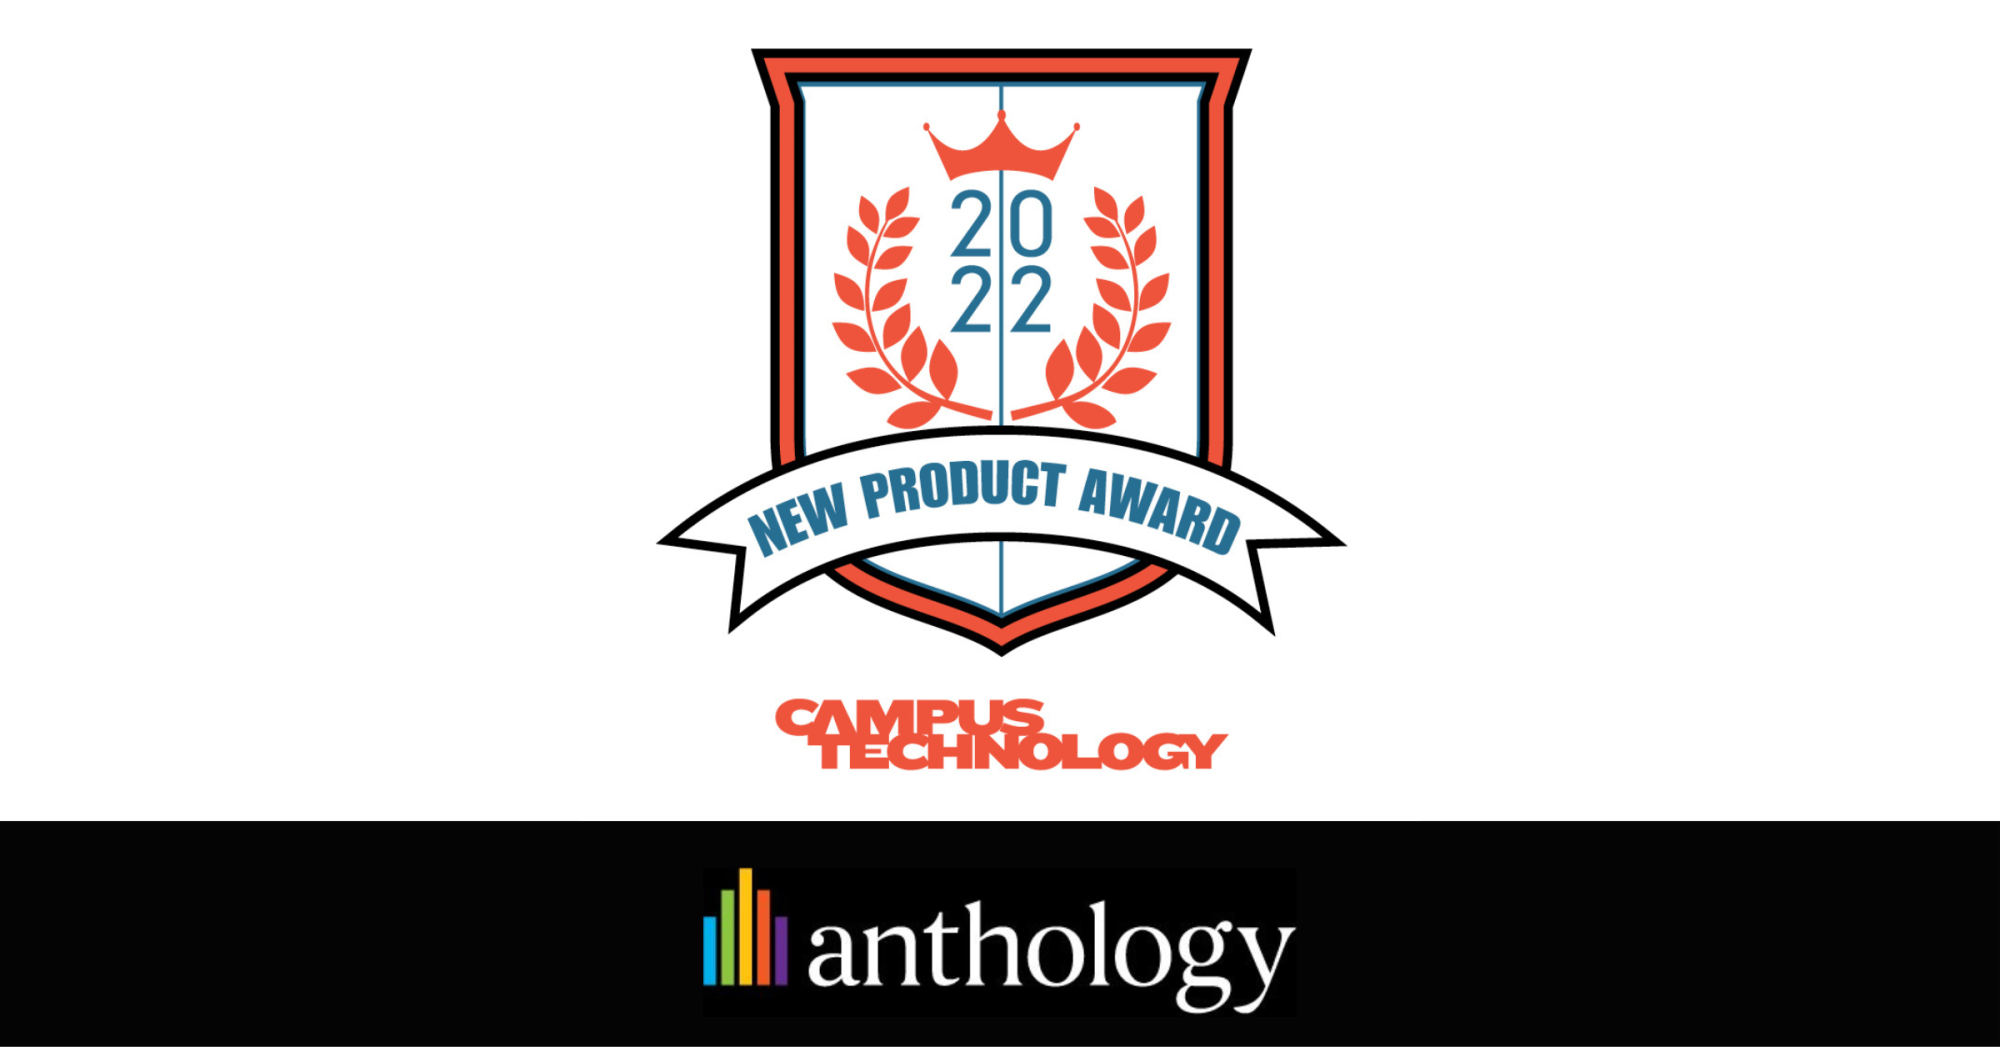 Campus Technology New Product Award logo locked up with Anthology logo